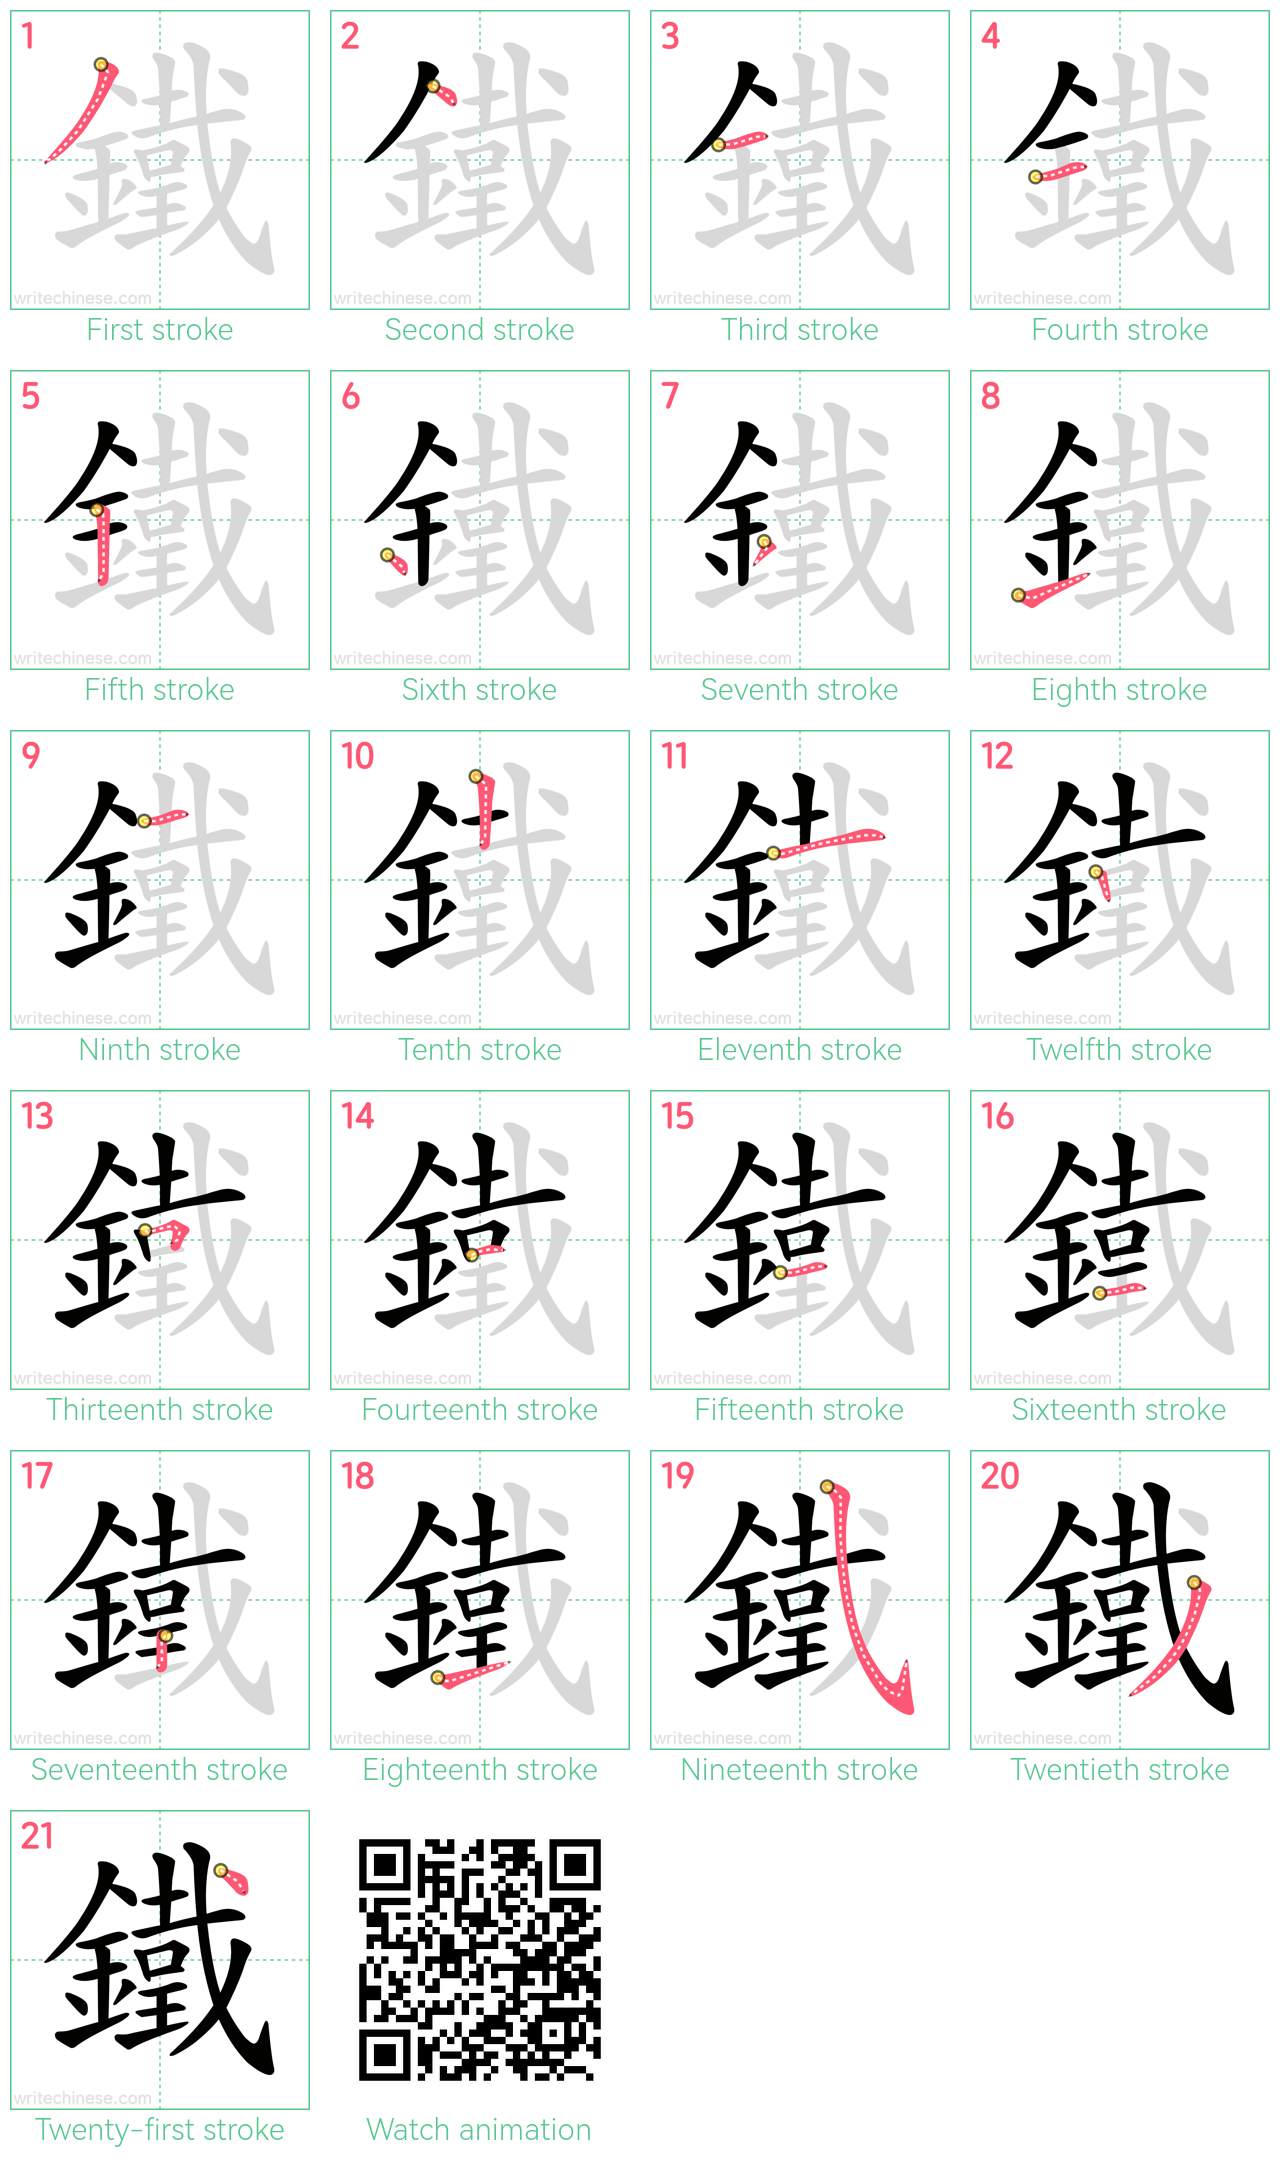 鐵 step-by-step stroke order diagrams